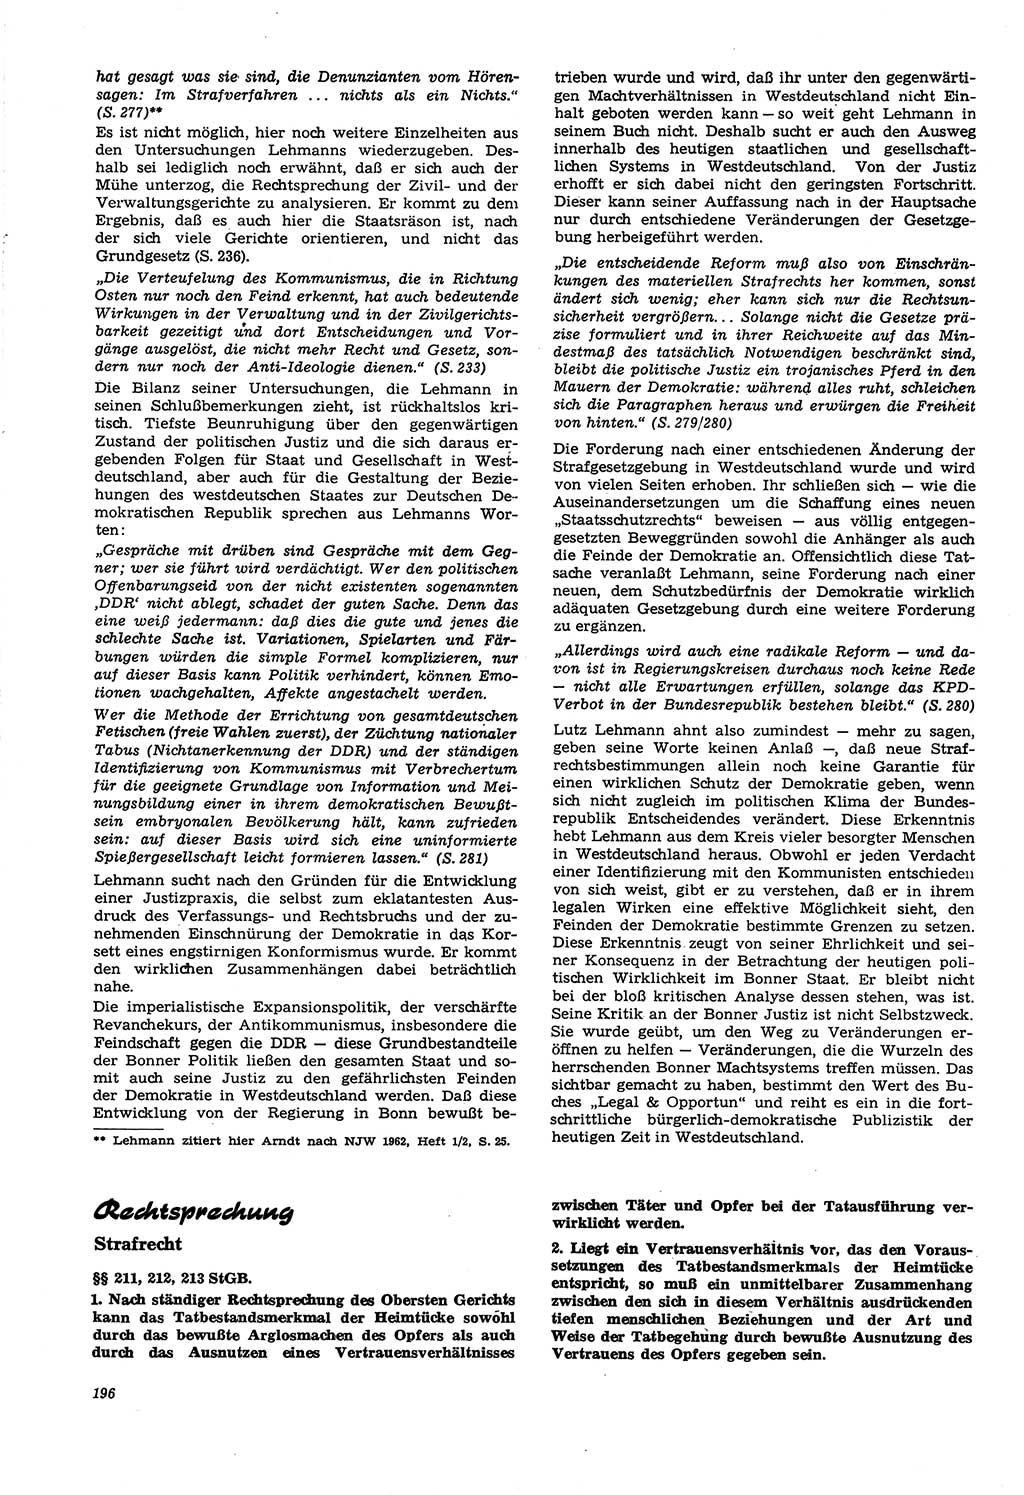 Neue Justiz (NJ), Zeitschrift für Recht und Rechtswissenschaft [Deutsche Demokratische Republik (DDR)], 21. Jahrgang 1967, Seite 196 (NJ DDR 1967, S. 196)